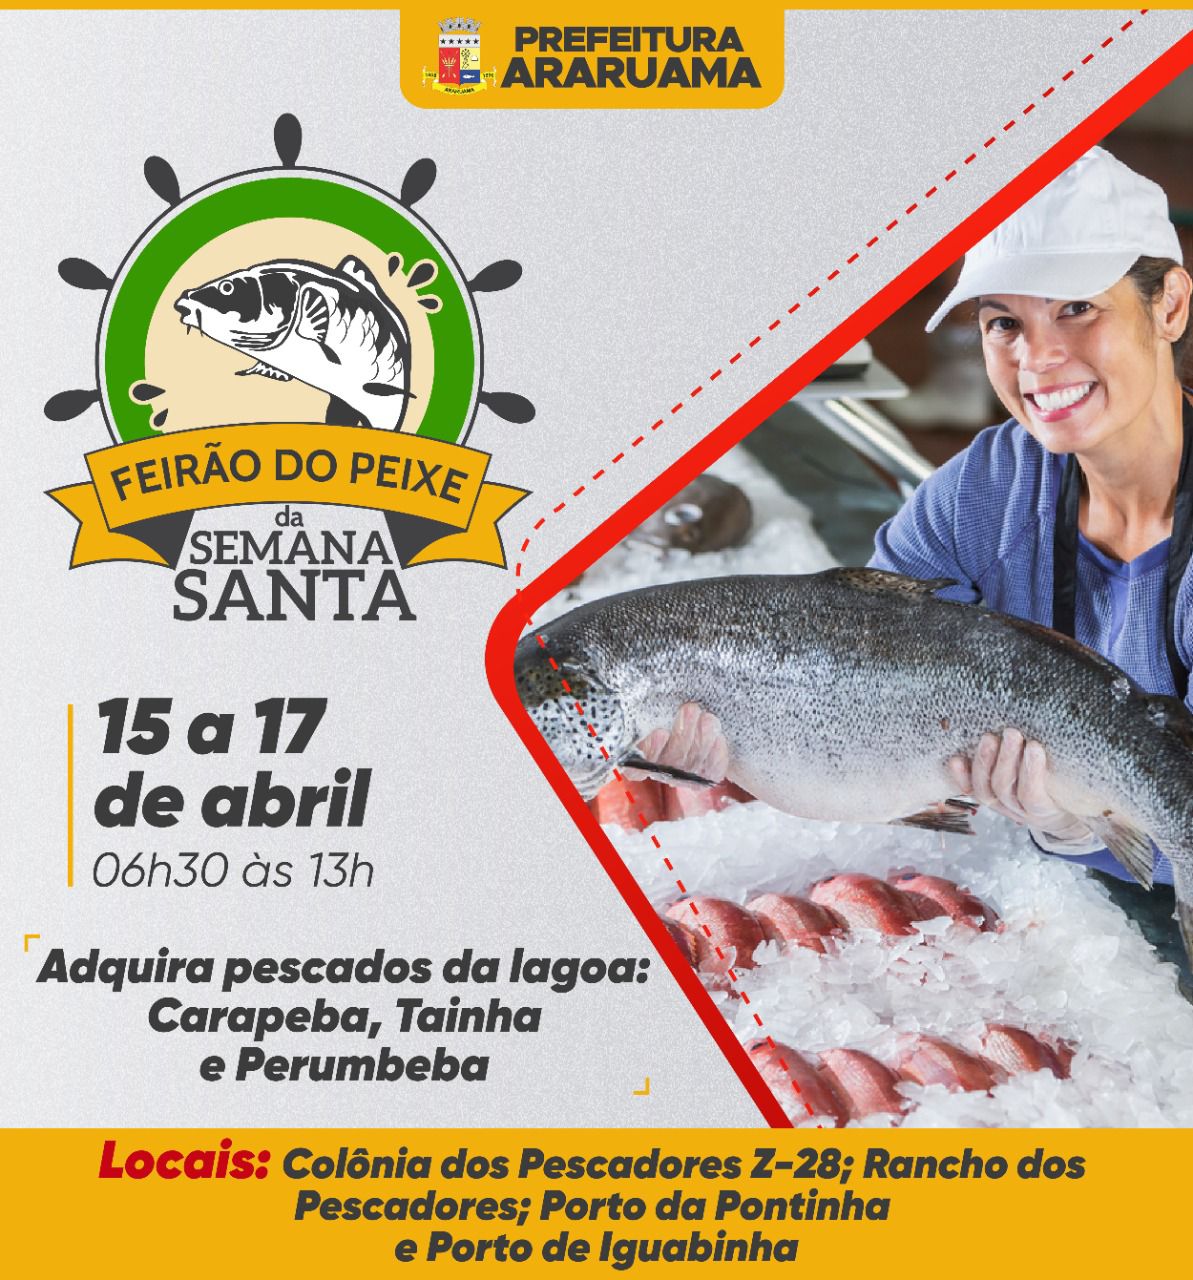 Prefeitura de Araruama vai realizar mais uma edição do “Feirão do Peixe da Semana Santa”